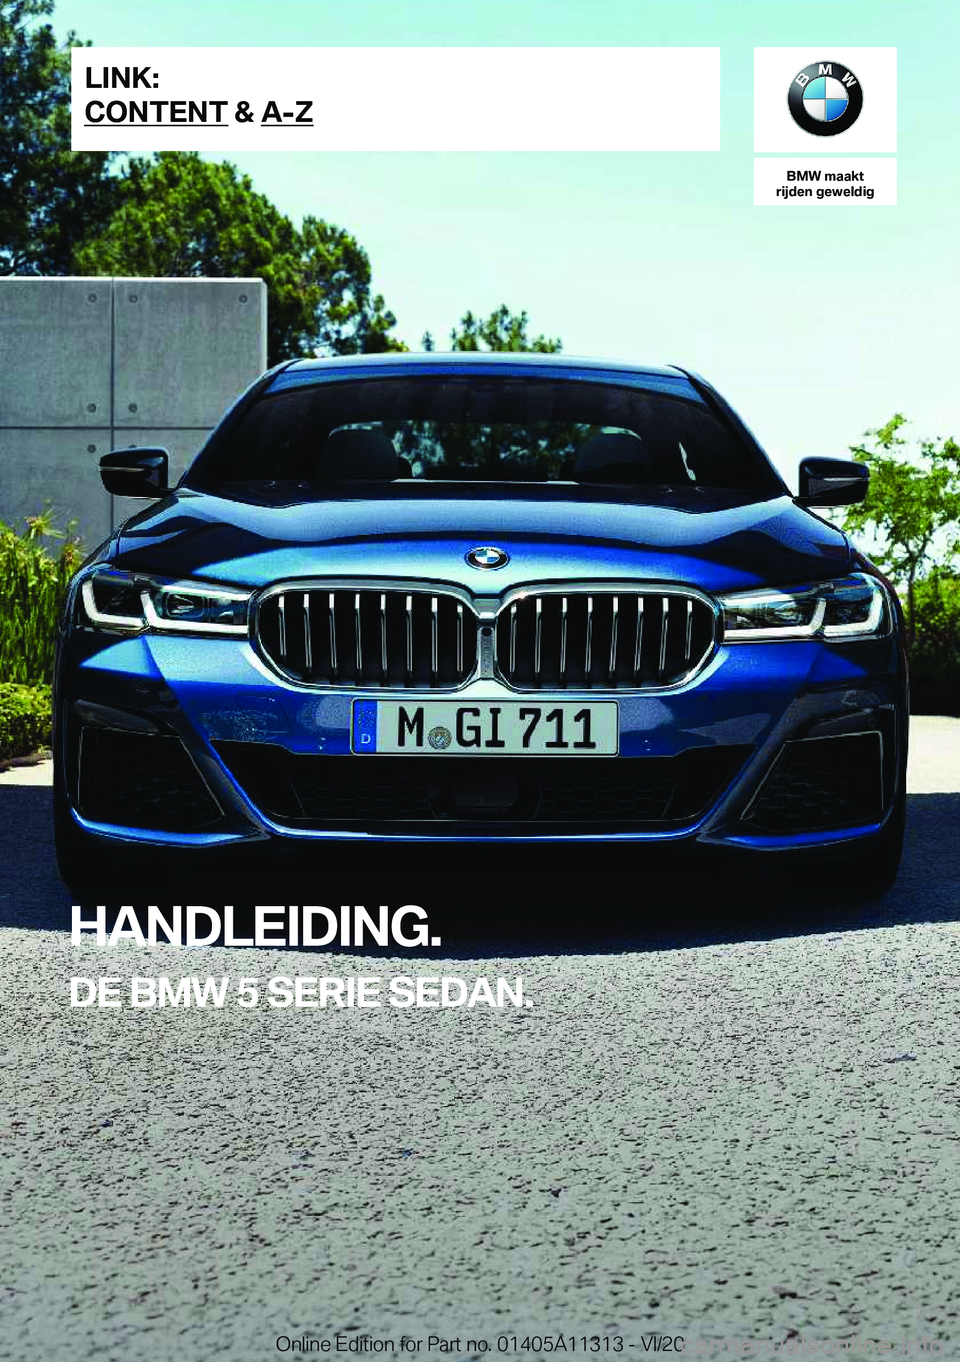 BMW 5 SERIES 2021  Instructieboekjes (in Dutch) �B�M�W��m�a�a�k�t
�r�i�j�d�e�n��g�e�w�e�l�d�i�g
�H�A�N�D�L�E�I�D�I�N�G�.
�D�E��B�M�W��5��S�E�R�I�E��S�E�D�A�N�.�L�I�N�K�:
�C�O�N�T�E�N�T��&��A�-�Z�O�n�l�i�n�e��E�d�i�t�i�o�n��f�o�r��P�a�r�t